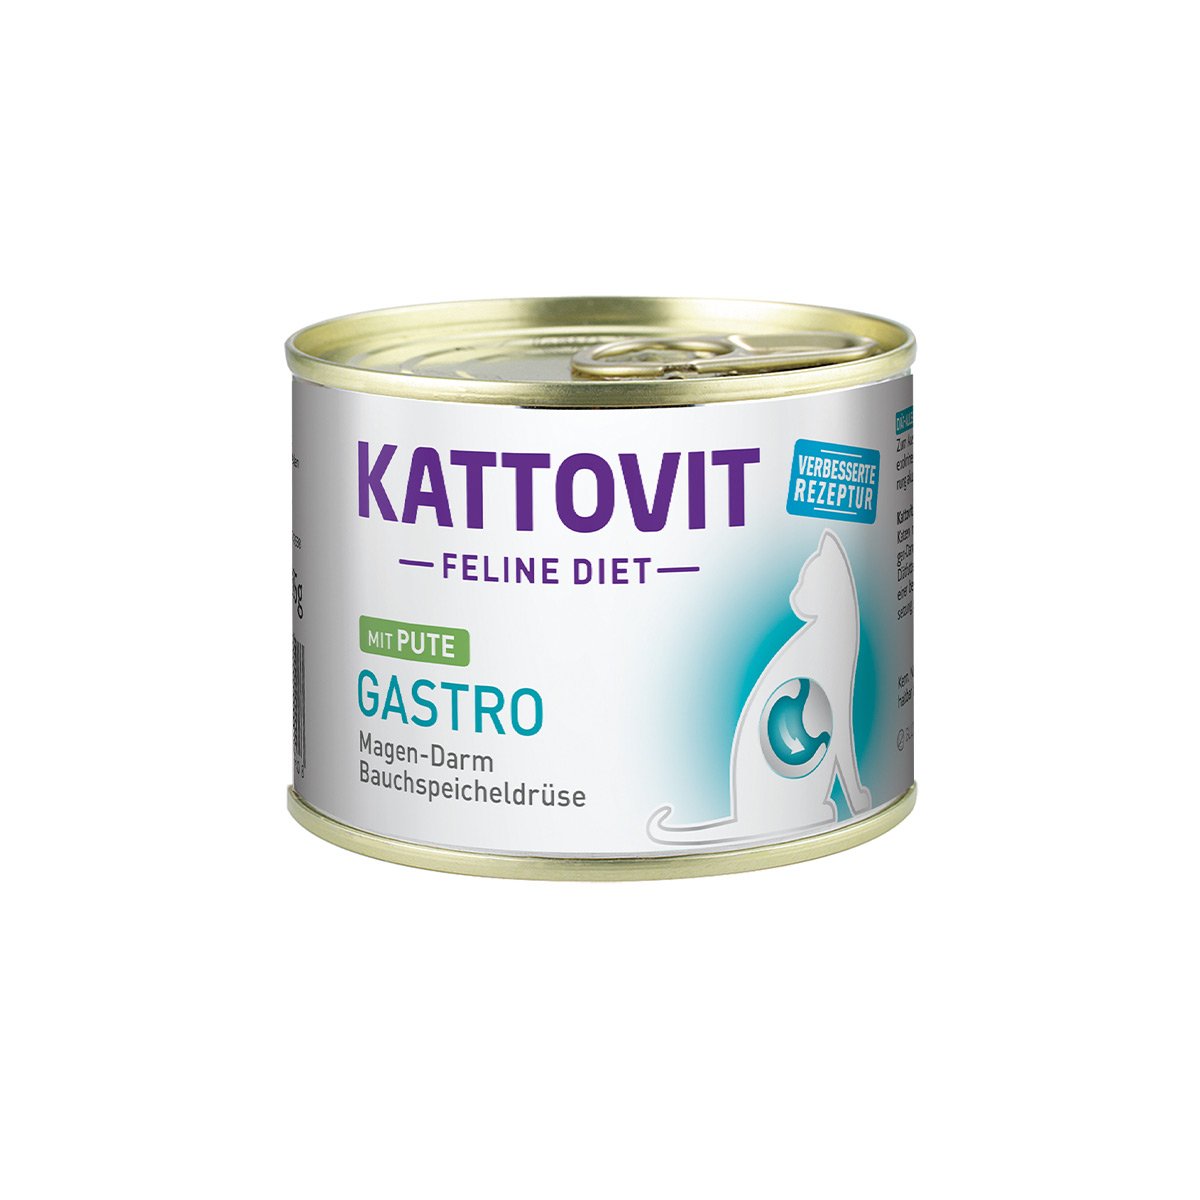 Kattovit Feline Diet Gastro Pute 12x185g von Kattovit